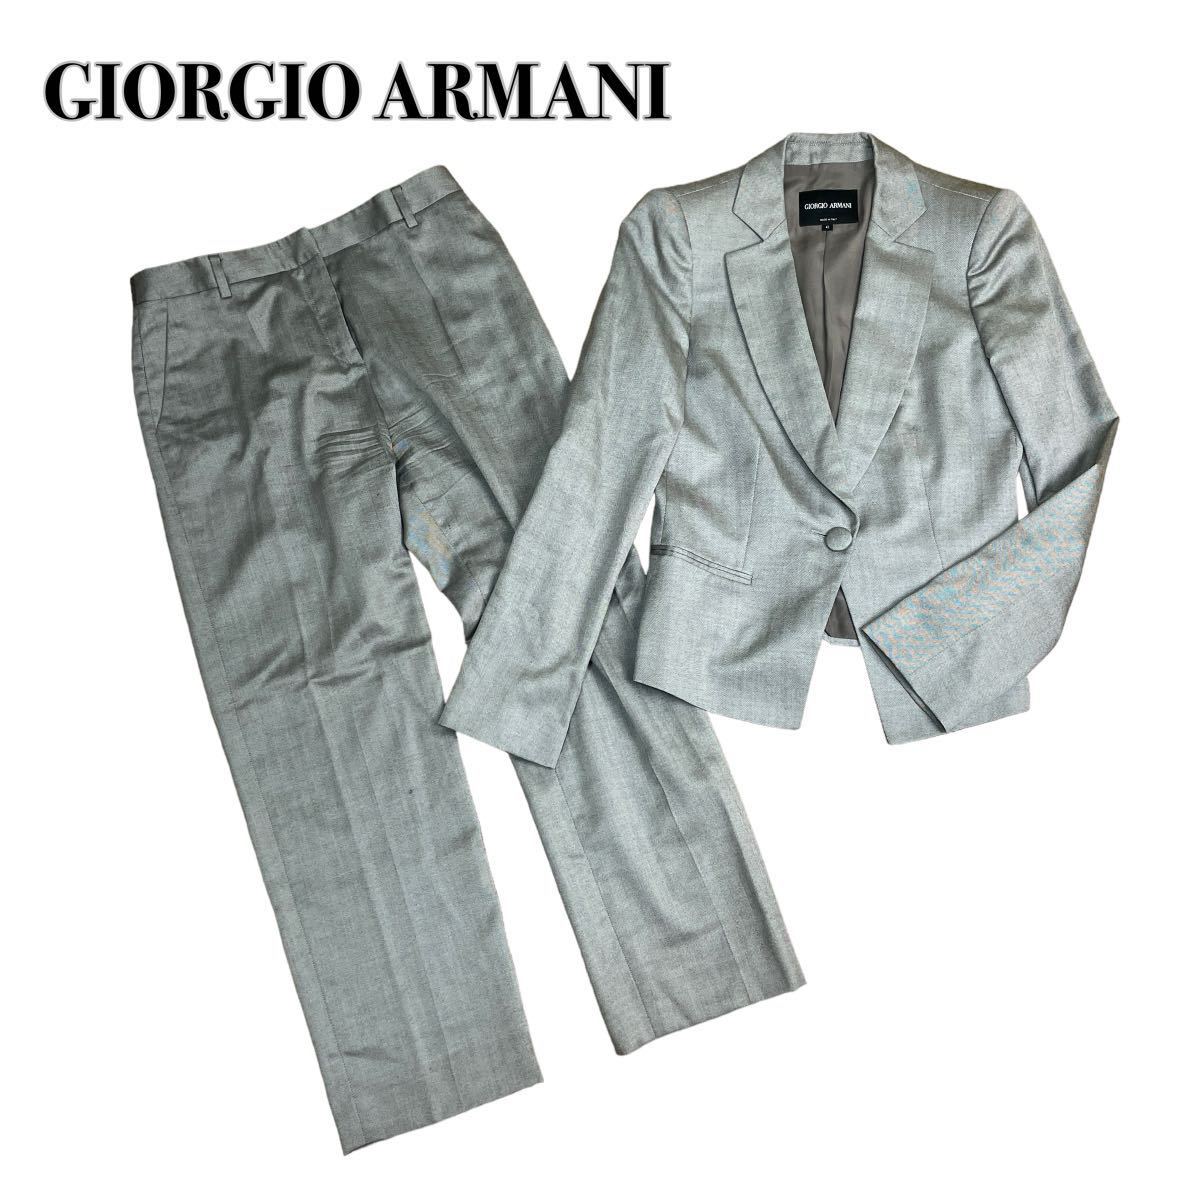 GIORGIO ARMANI ジョルジオアルマーニ セットアップ パンツスーツ 光沢シルバー カシミヤシルク 42 XL 大きいサイズ_画像1